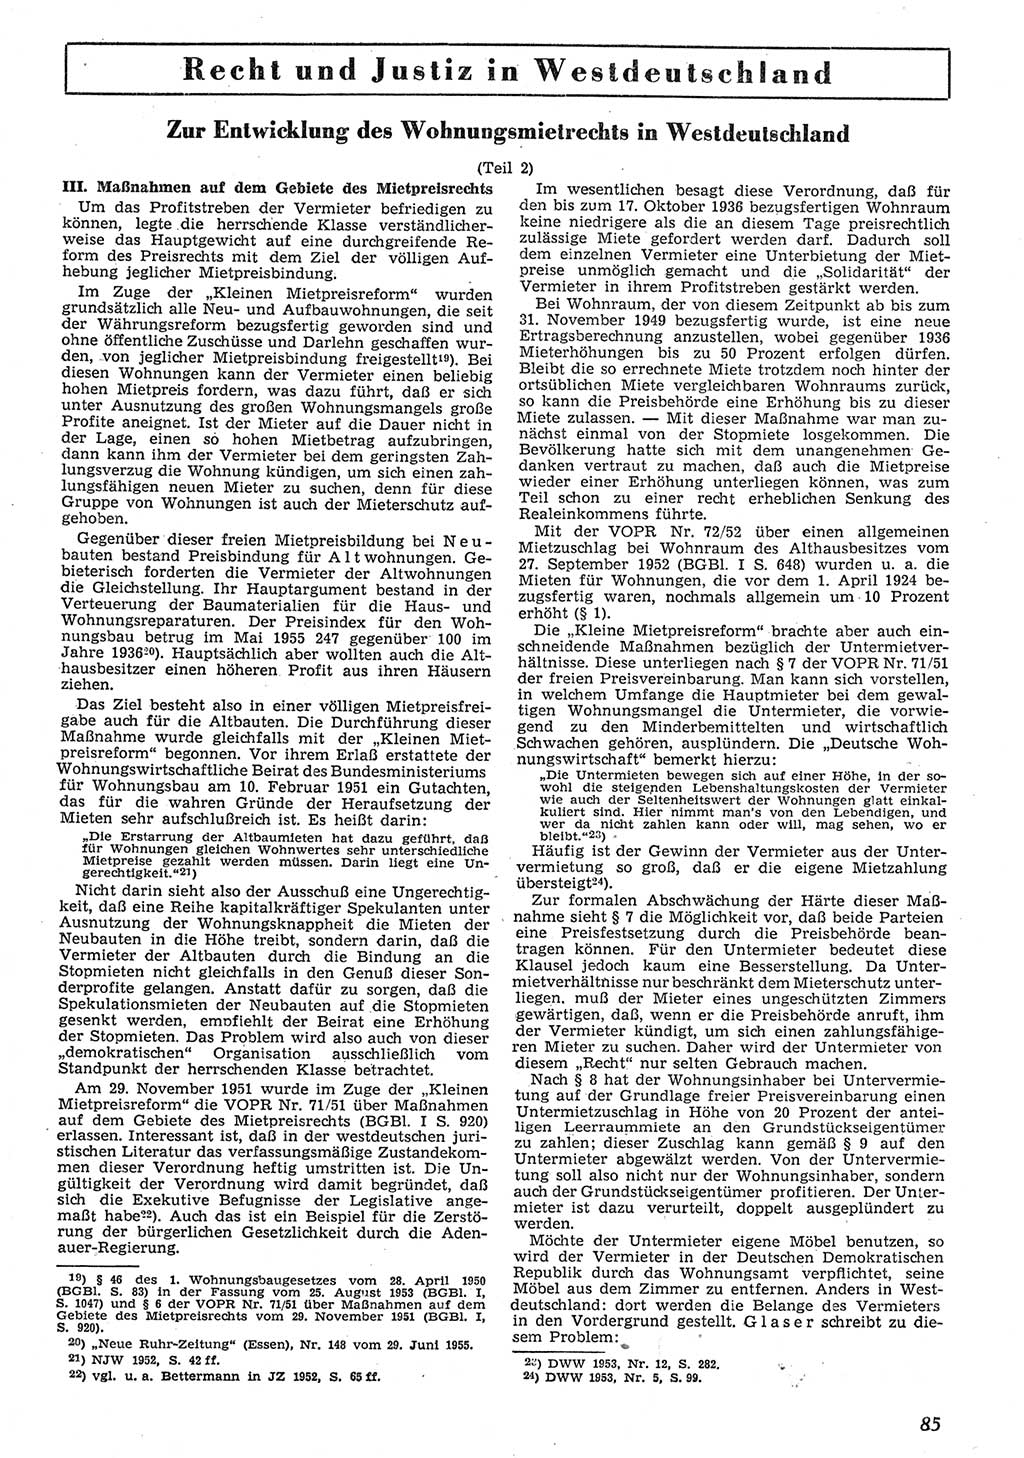 Neue Justiz (NJ), Zeitschrift für Recht und Rechtswissenschaft [Deutsche Demokratische Republik (DDR)], 10. Jahrgang 1956, Seite 85 (NJ DDR 1956, S. 85)